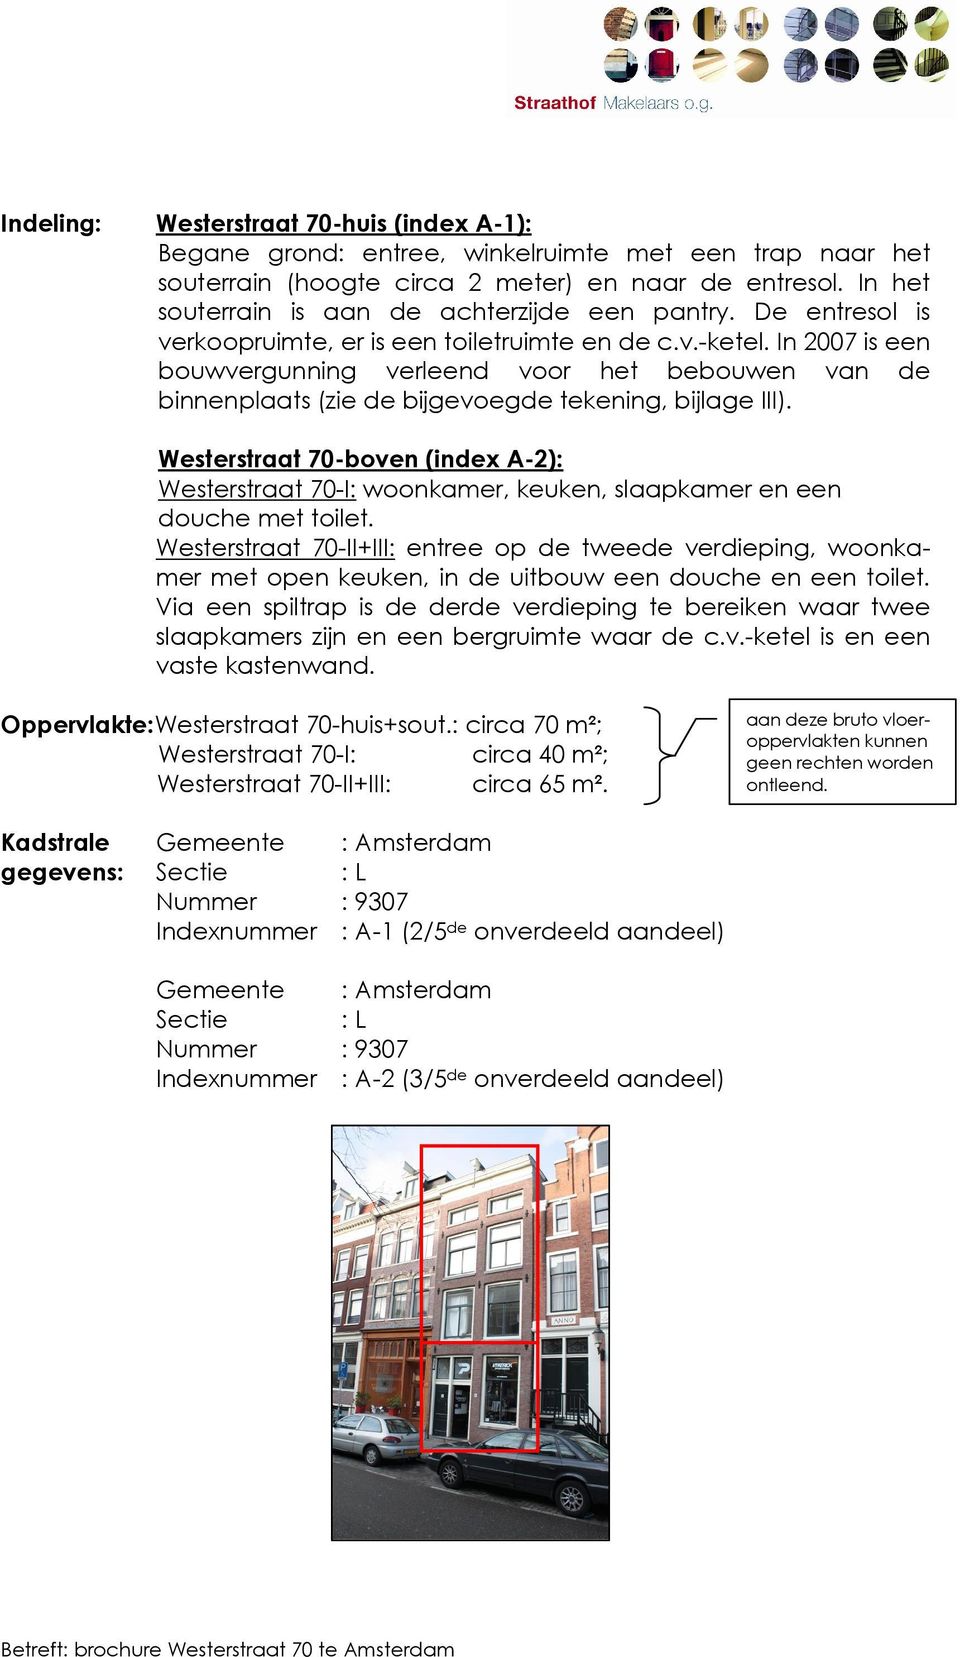 In 2007 is een bouwvergunning verleend voor het bebouwen van de binnenplaats (zie de bijgevoegde tekening, bijlage III).